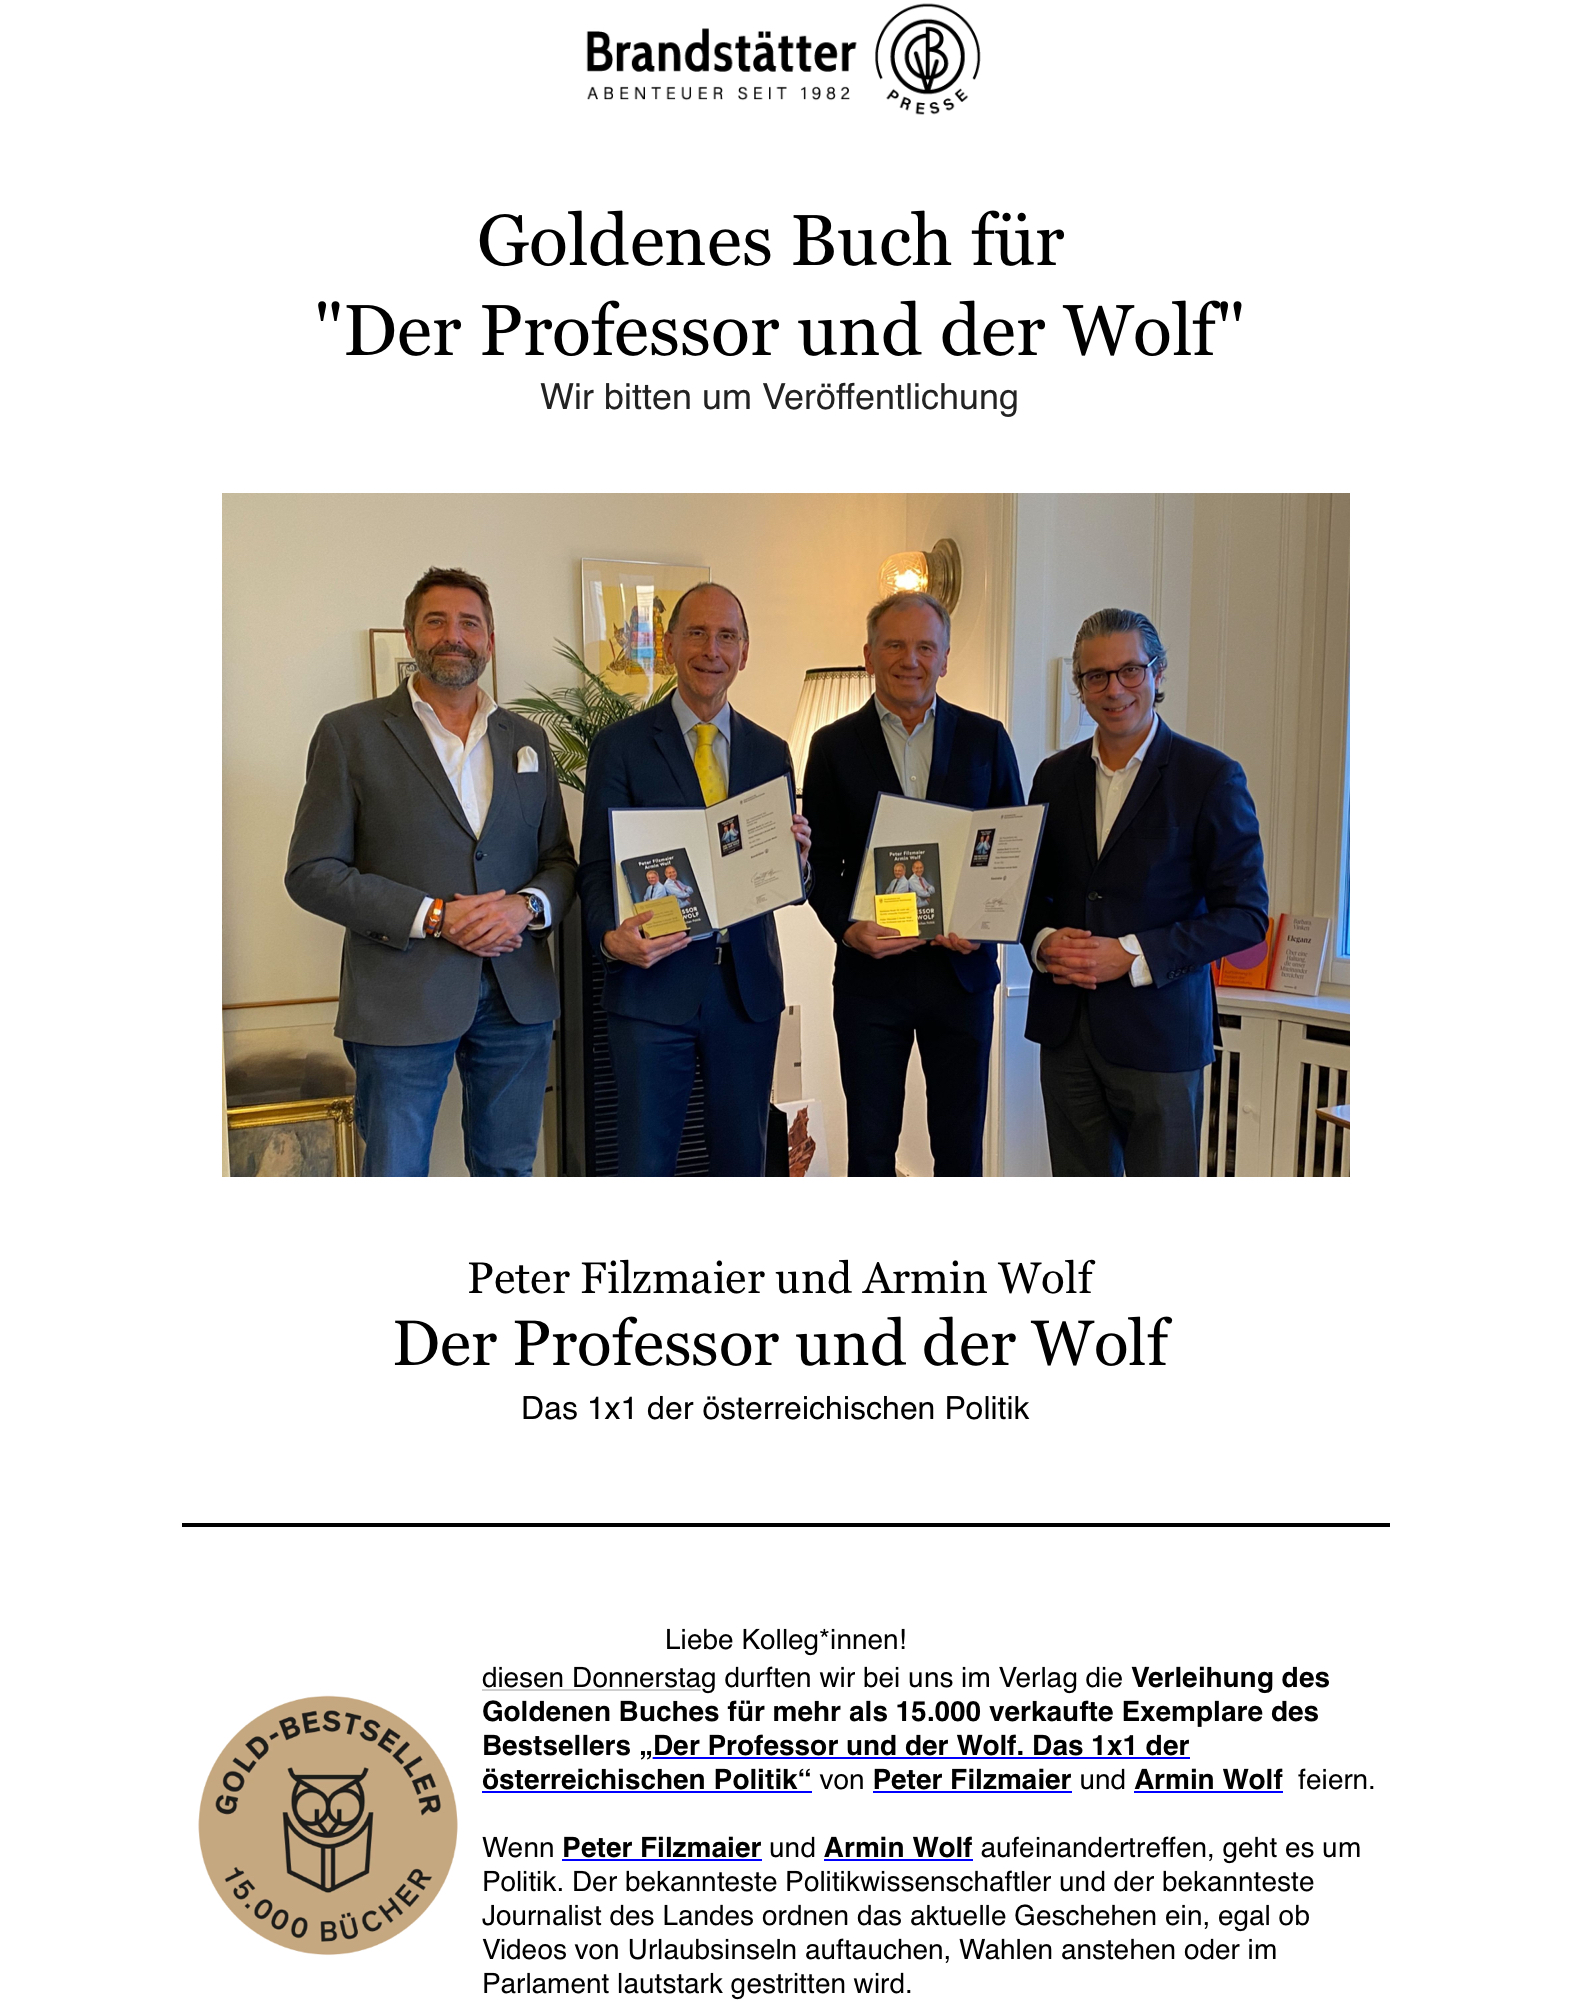 Presseaussendung zur Verleihung des Goldenen Buches für 15.000 verkaufte Exemplare von „Der Professor und der Wolf“